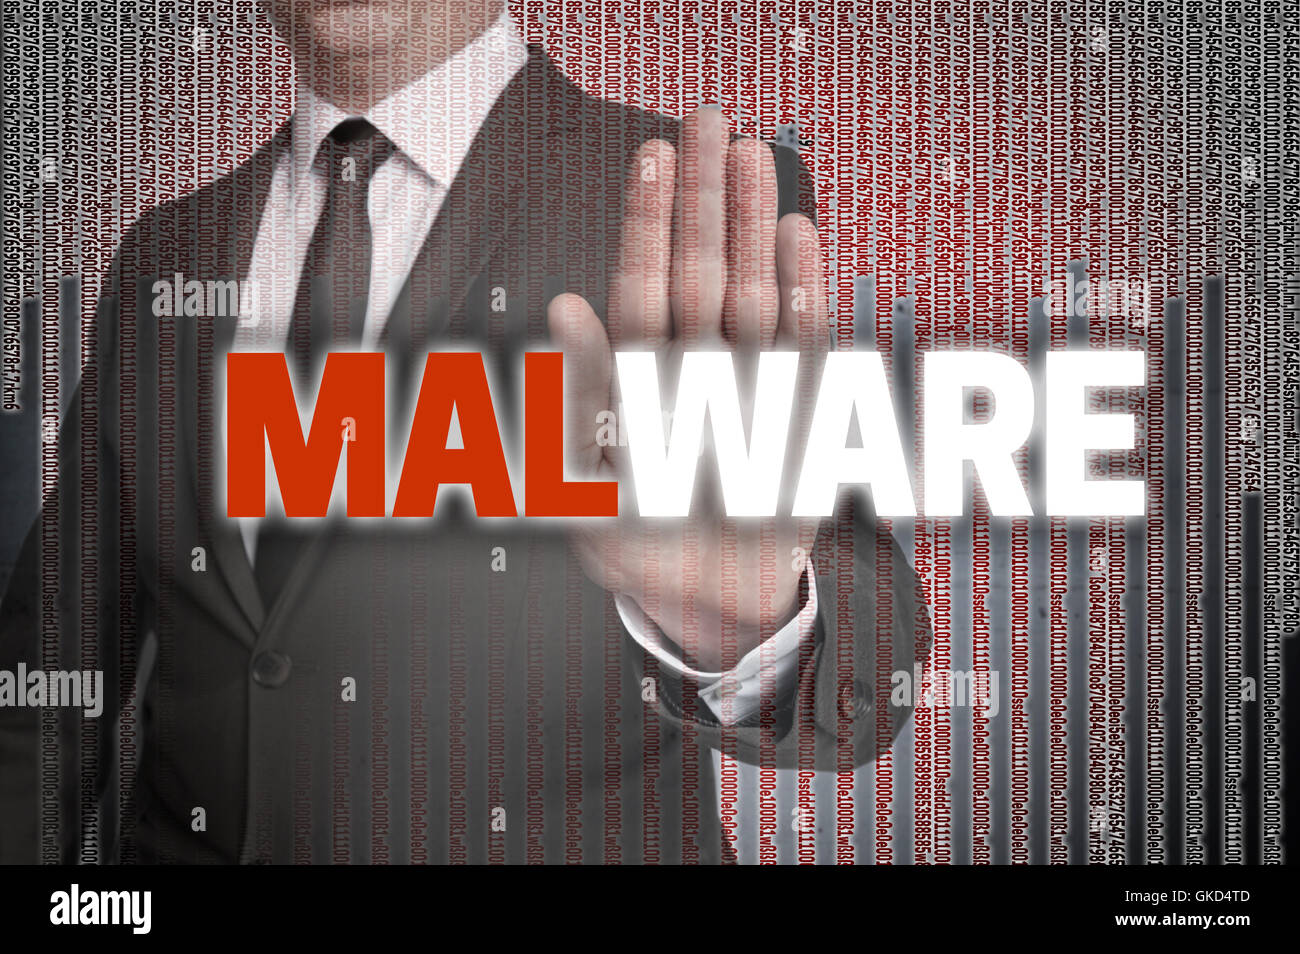 Malware avec matrice est illustré par l'homme d'affaires. Banque D'Images